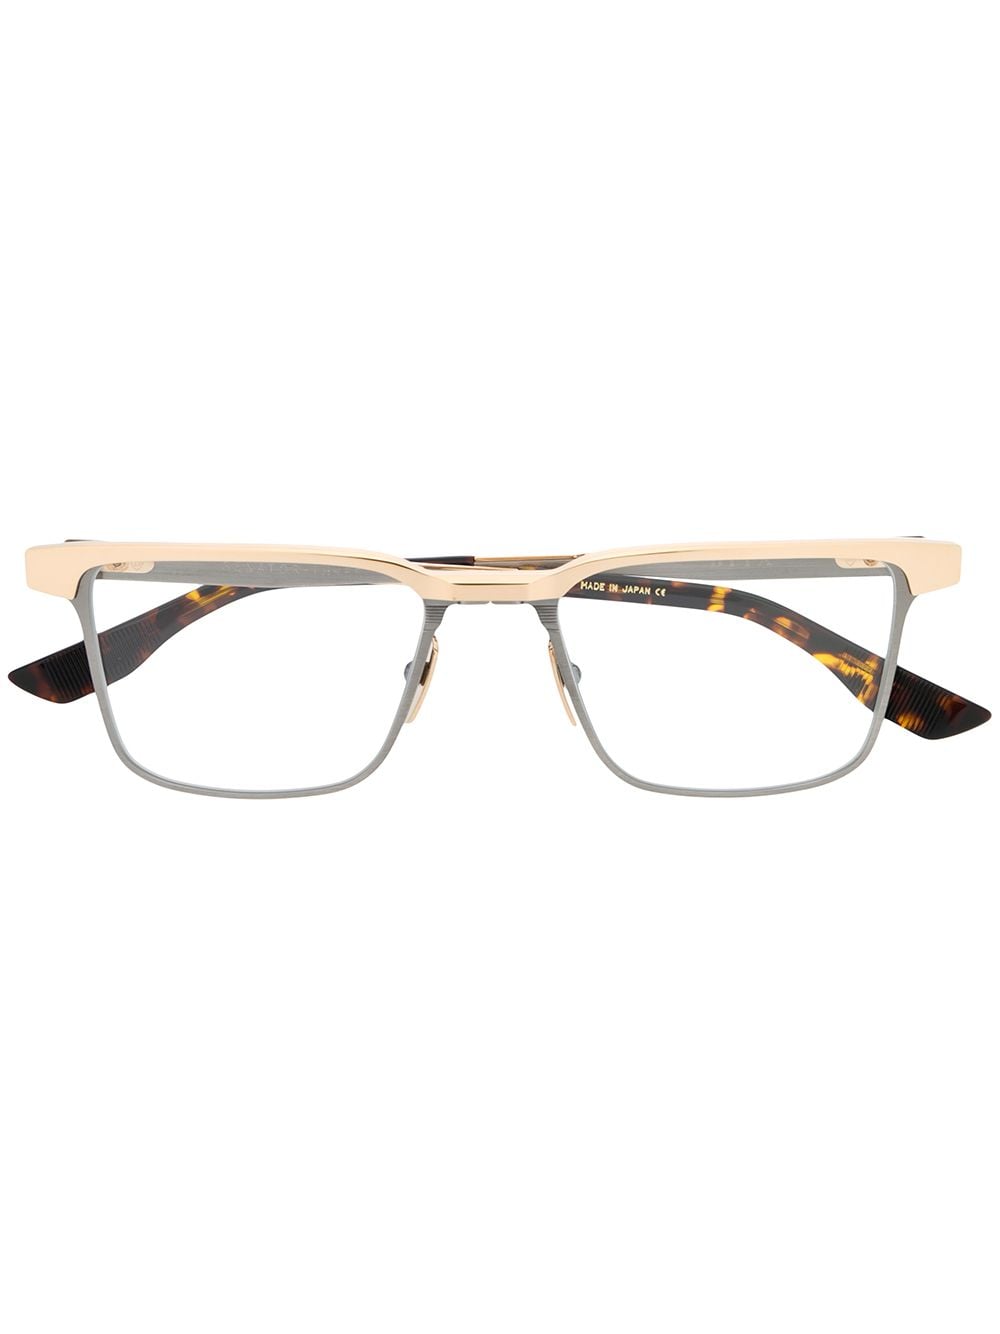 Dita Eyewear rectangular glasses